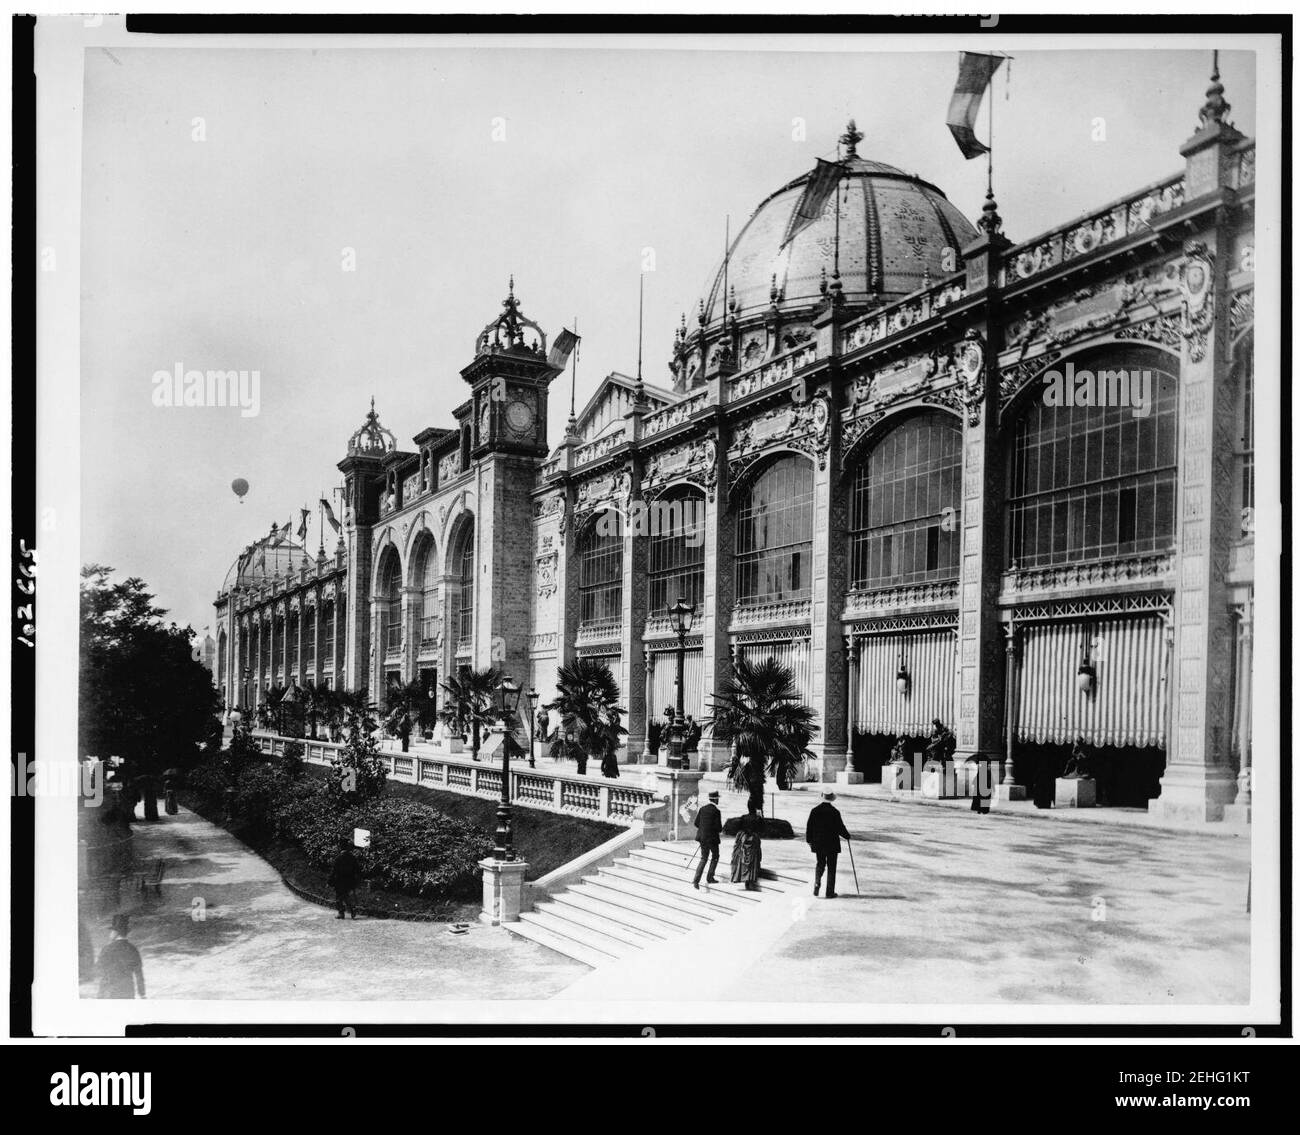 Palast der Schönen Künste, als von der Seite gesehen, mit einem Heißluftballon in der Ferne, Paris Exposition, 1889 Stockfoto